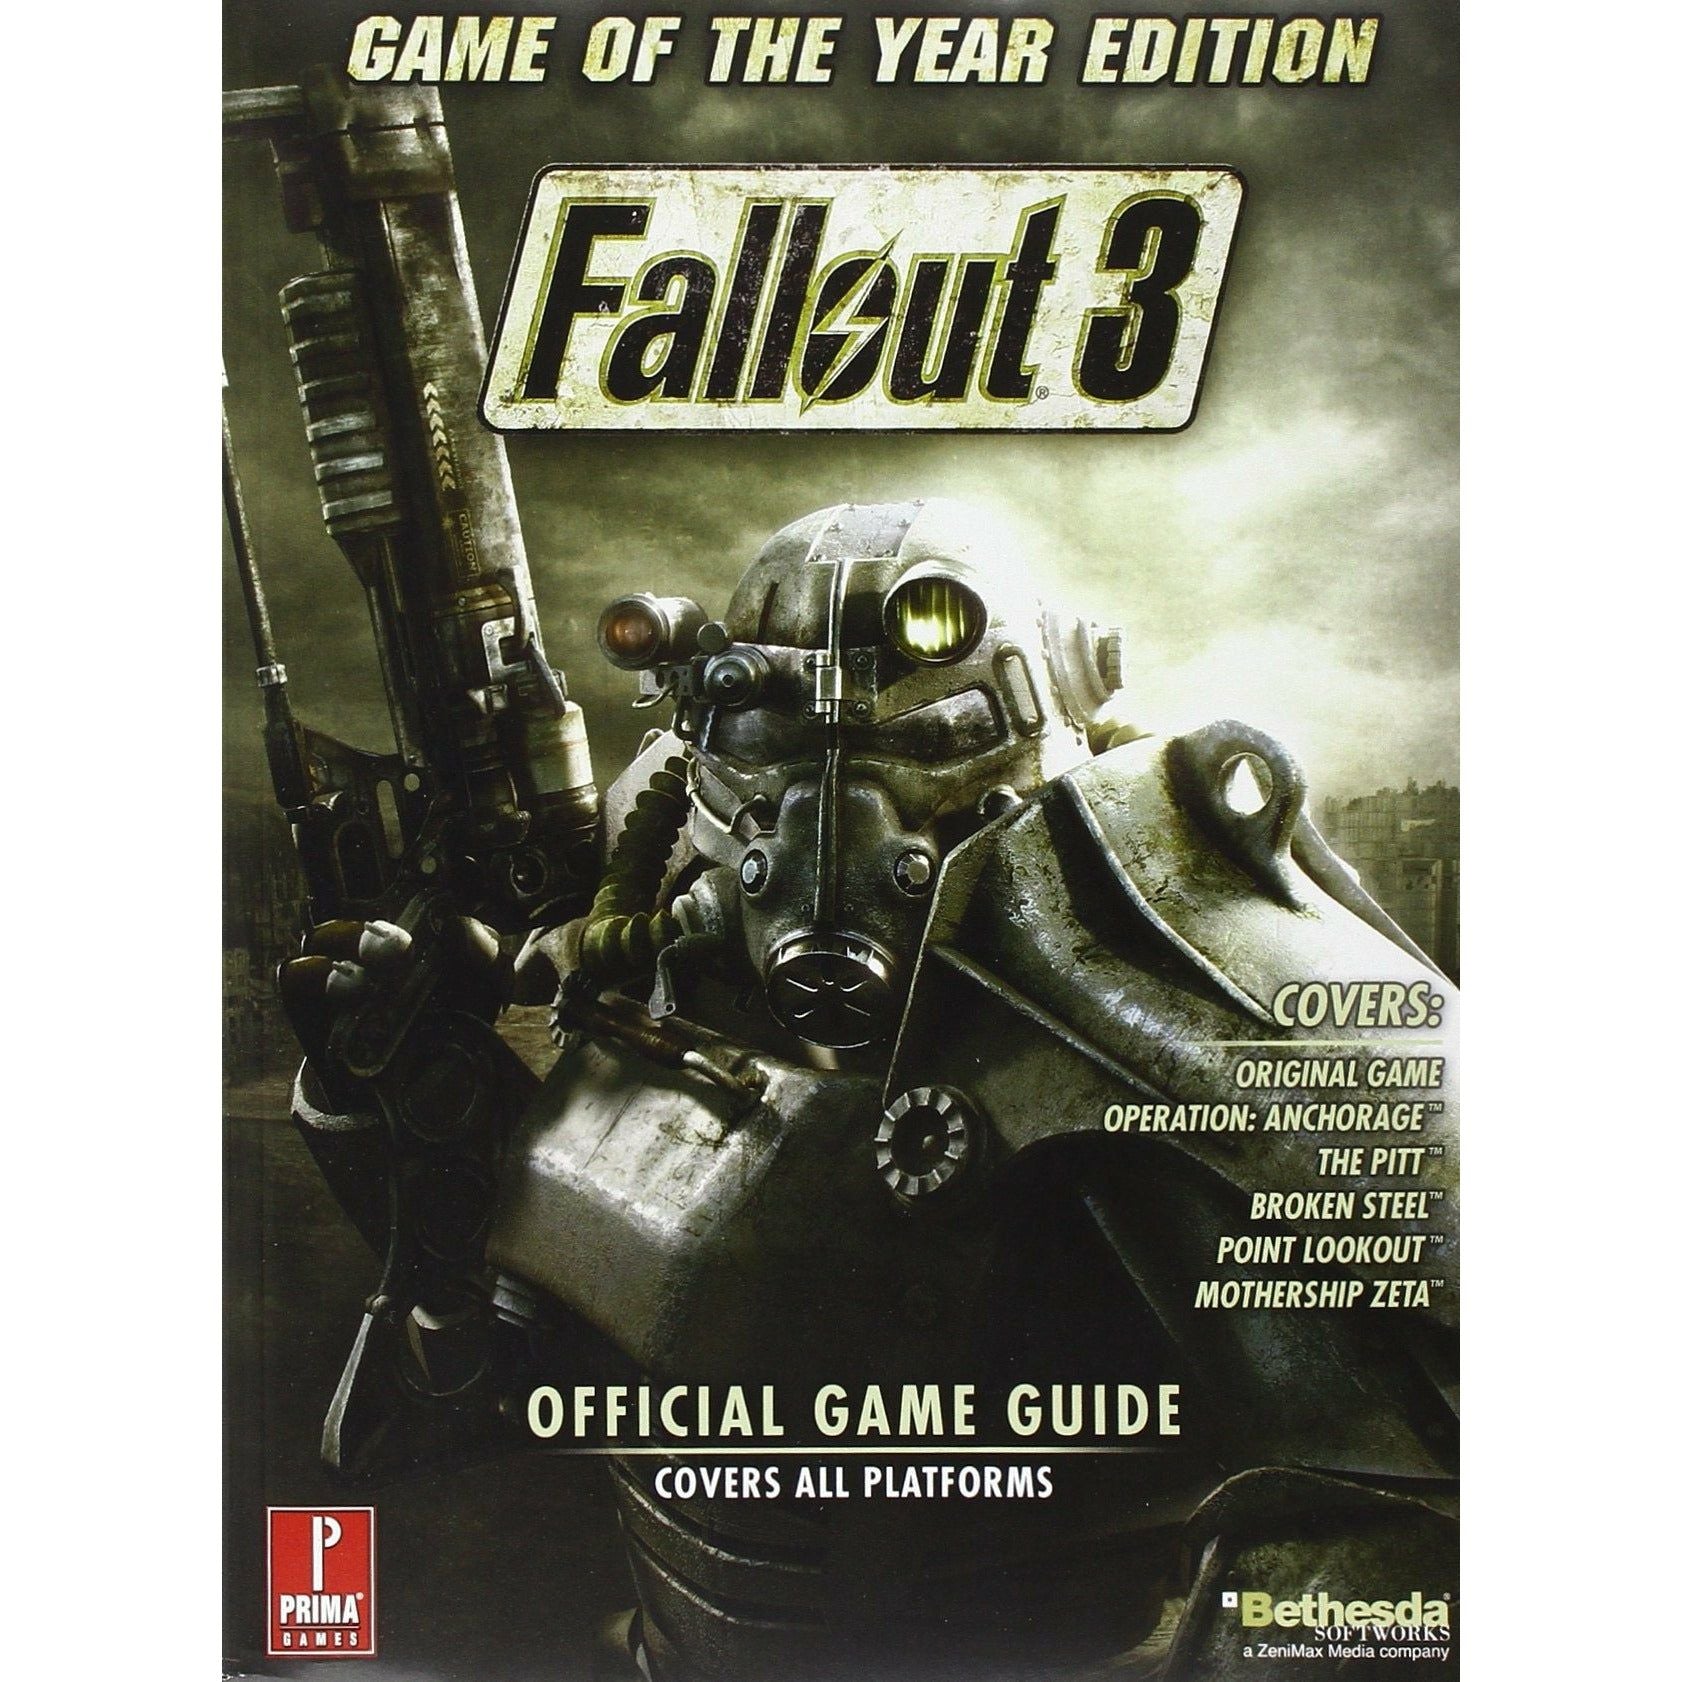 STRAT - Guide du jeu officiel du jeu de l'année Fallout 3 (Prima)